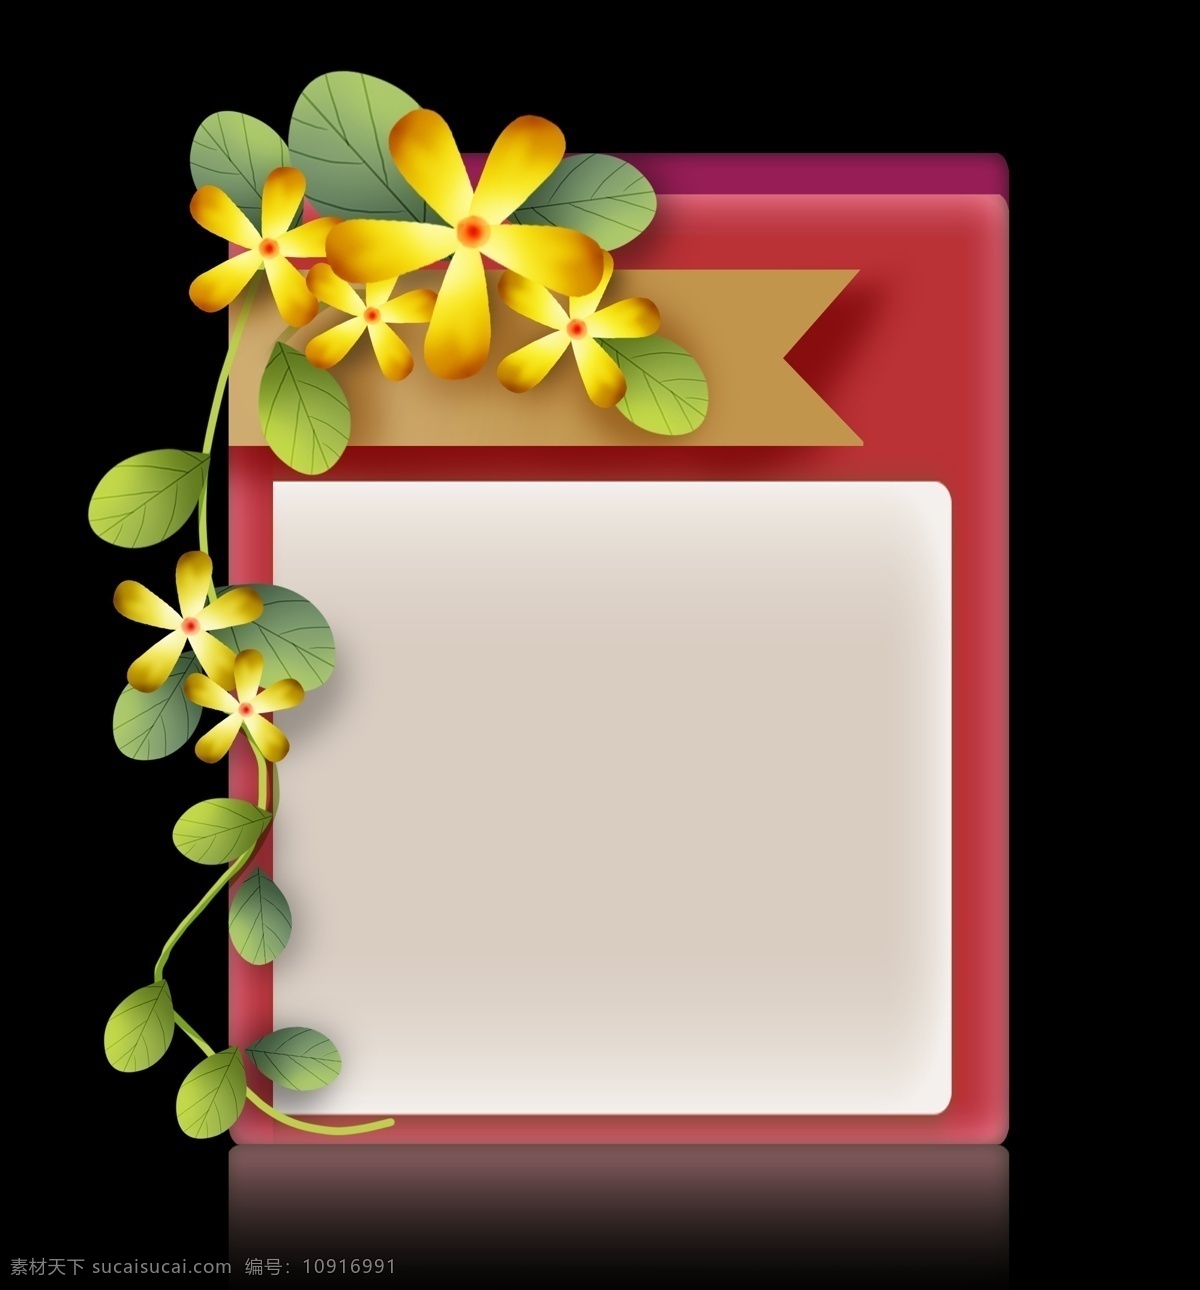 黄色 花朵 红色 提示 框 立体 标题 野花 黄色花朵 花朵提示框 花卉文本框 春天 文字